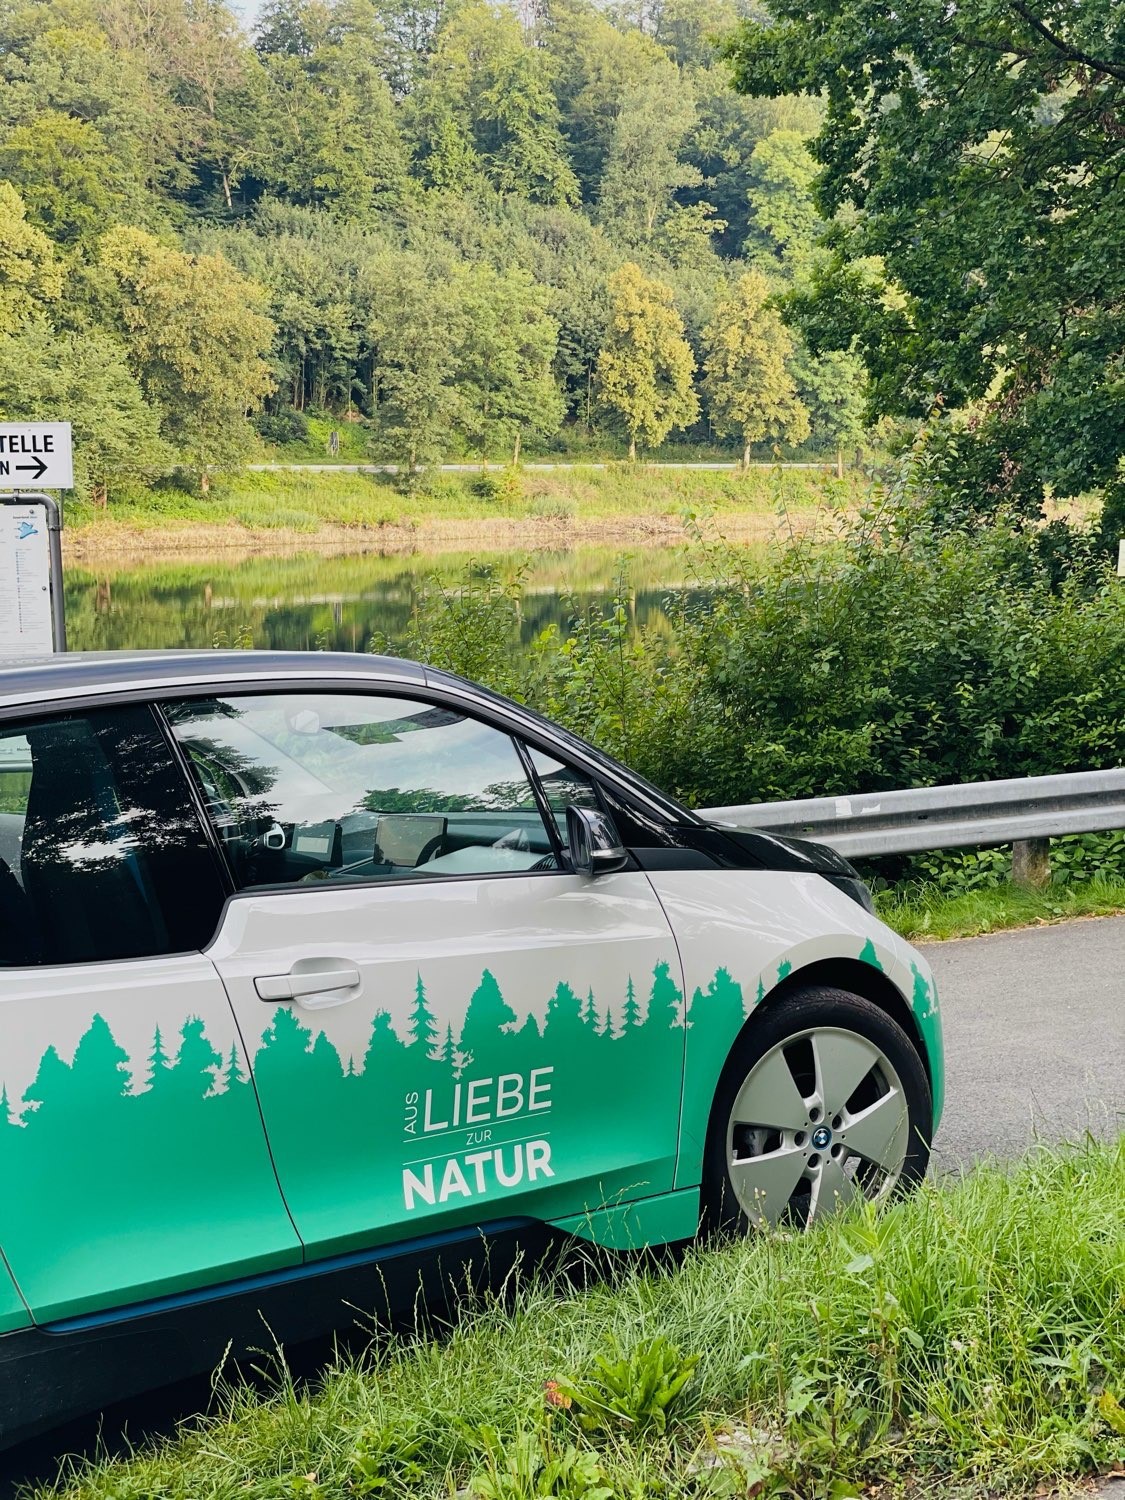 [Translate to English UK:] grünes Auto mit Schriftzug "Aus Liebe zur Natur"ur"